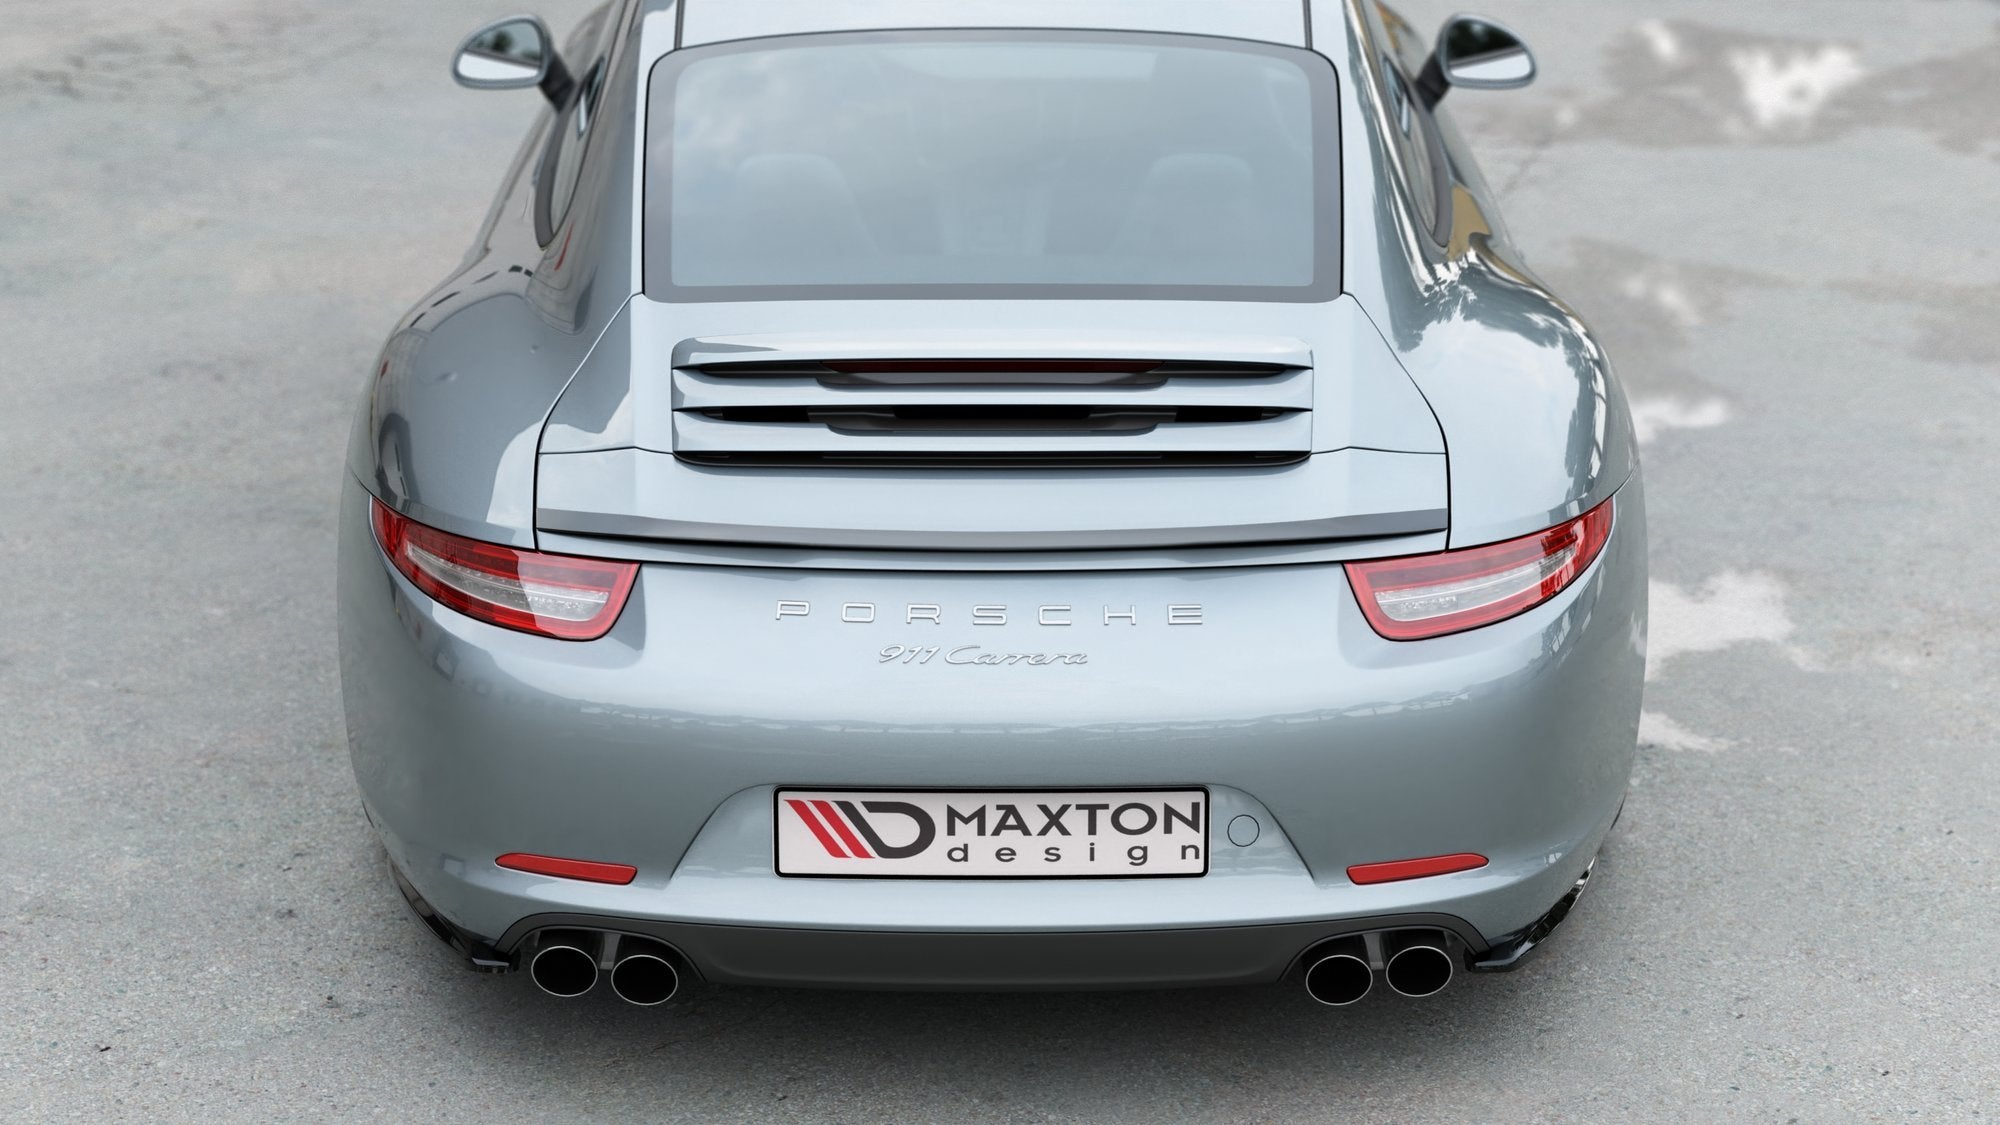 Zubehör für Porsche Sportwagen - Friedrich tunt Porsche - Jetzt starten!